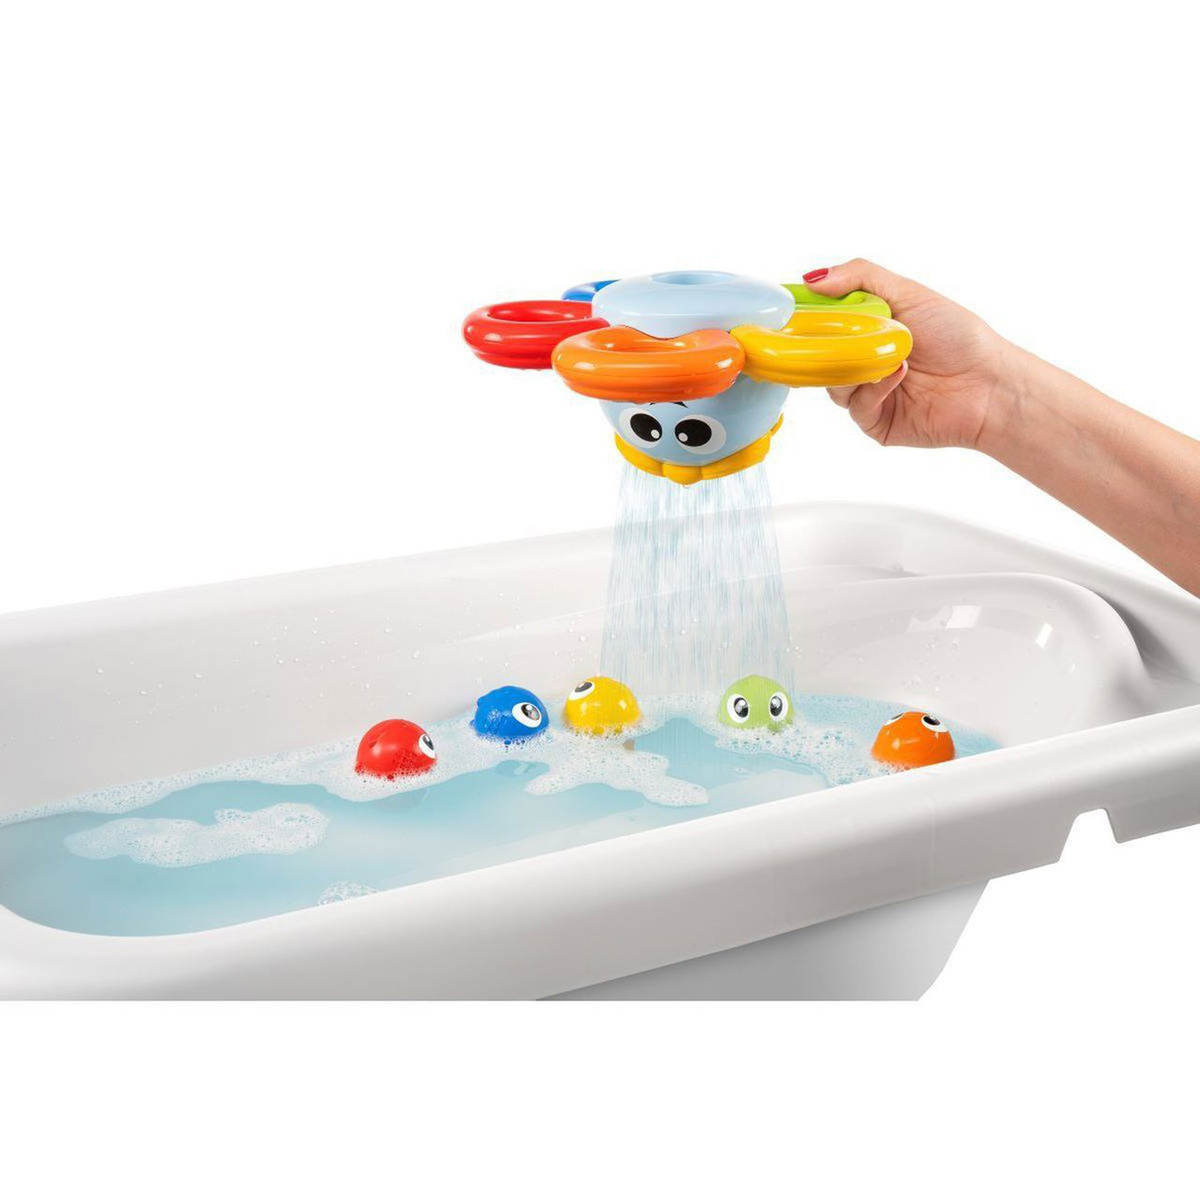 Chicco Gioco Bagno Billy il Polpo Bath Toy, Multi-Coloured, 10037